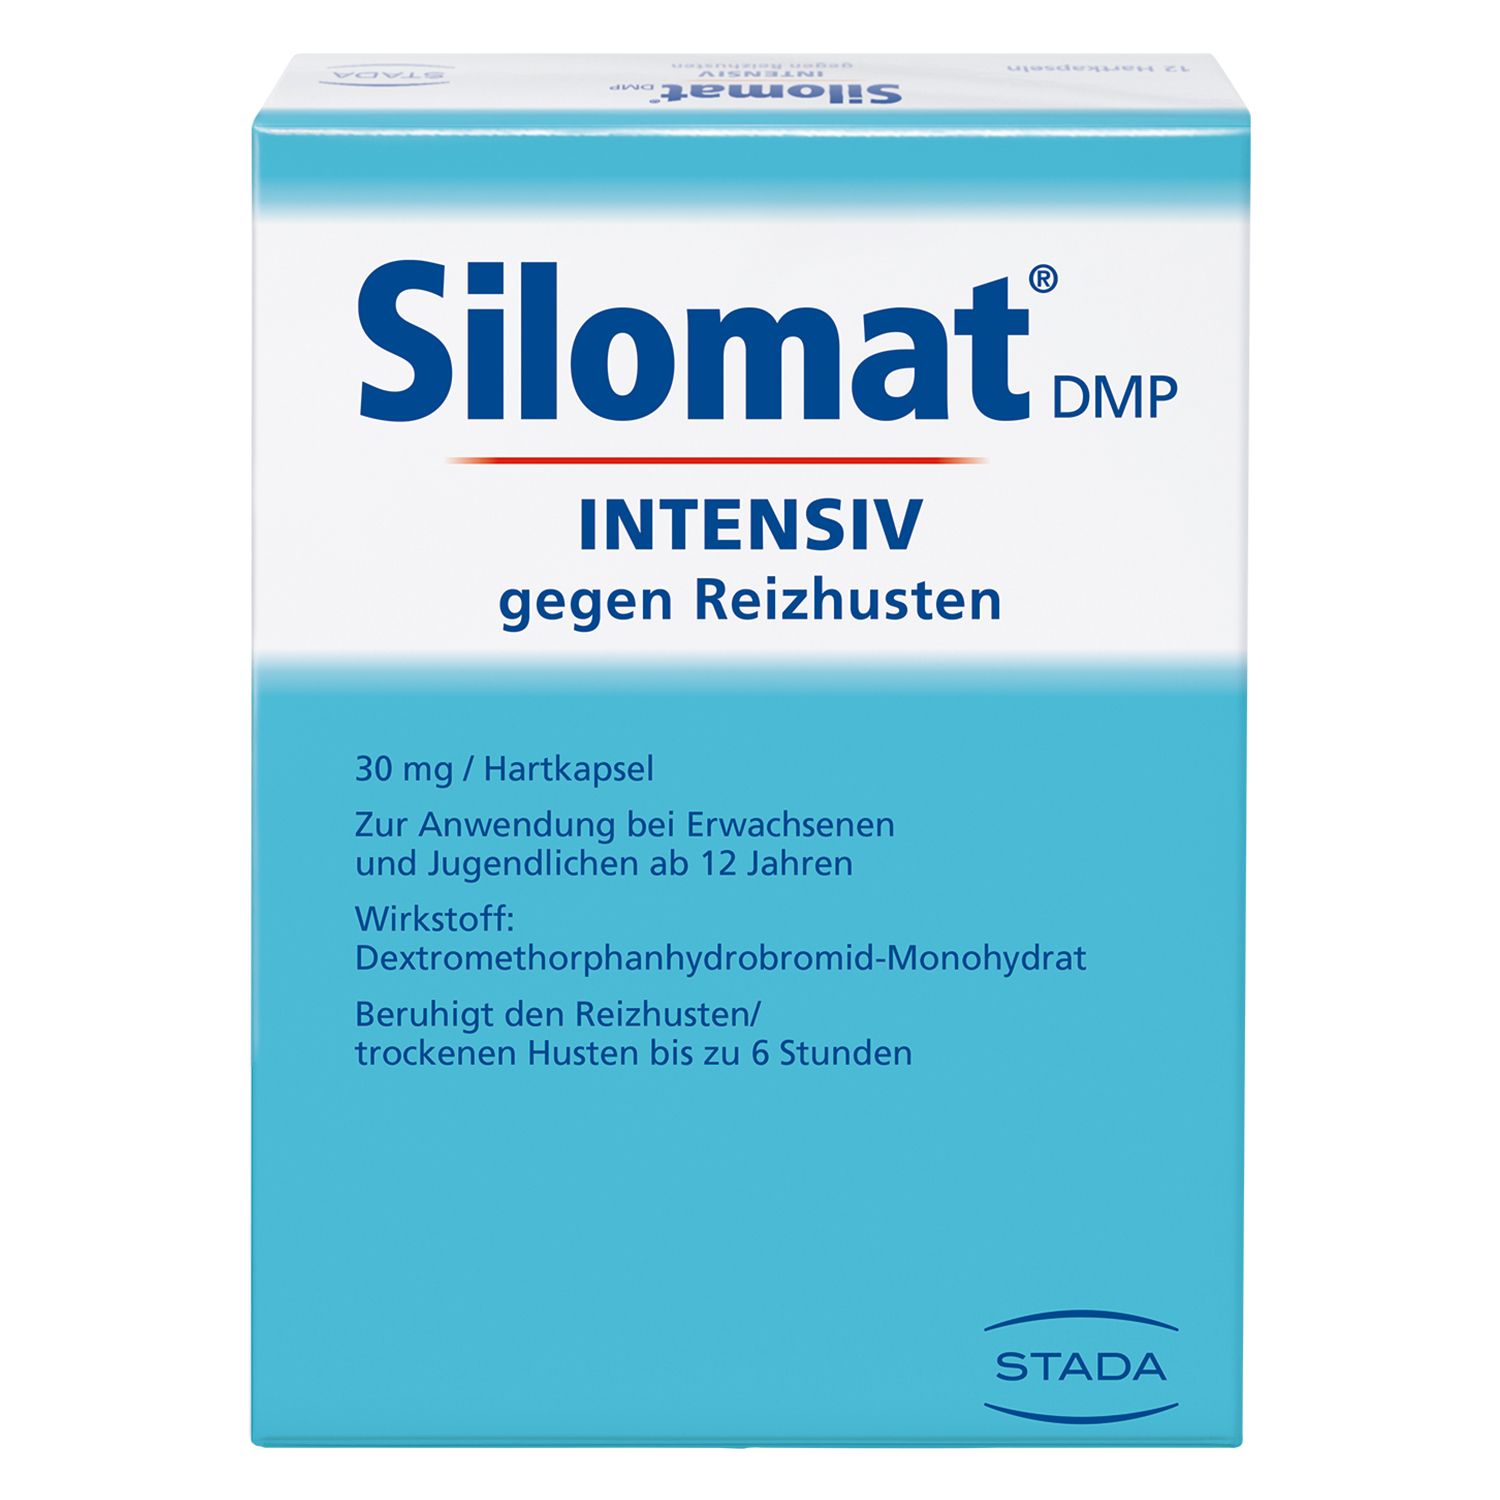 Silomat® DMP INTENSIV gegen Reizhusten